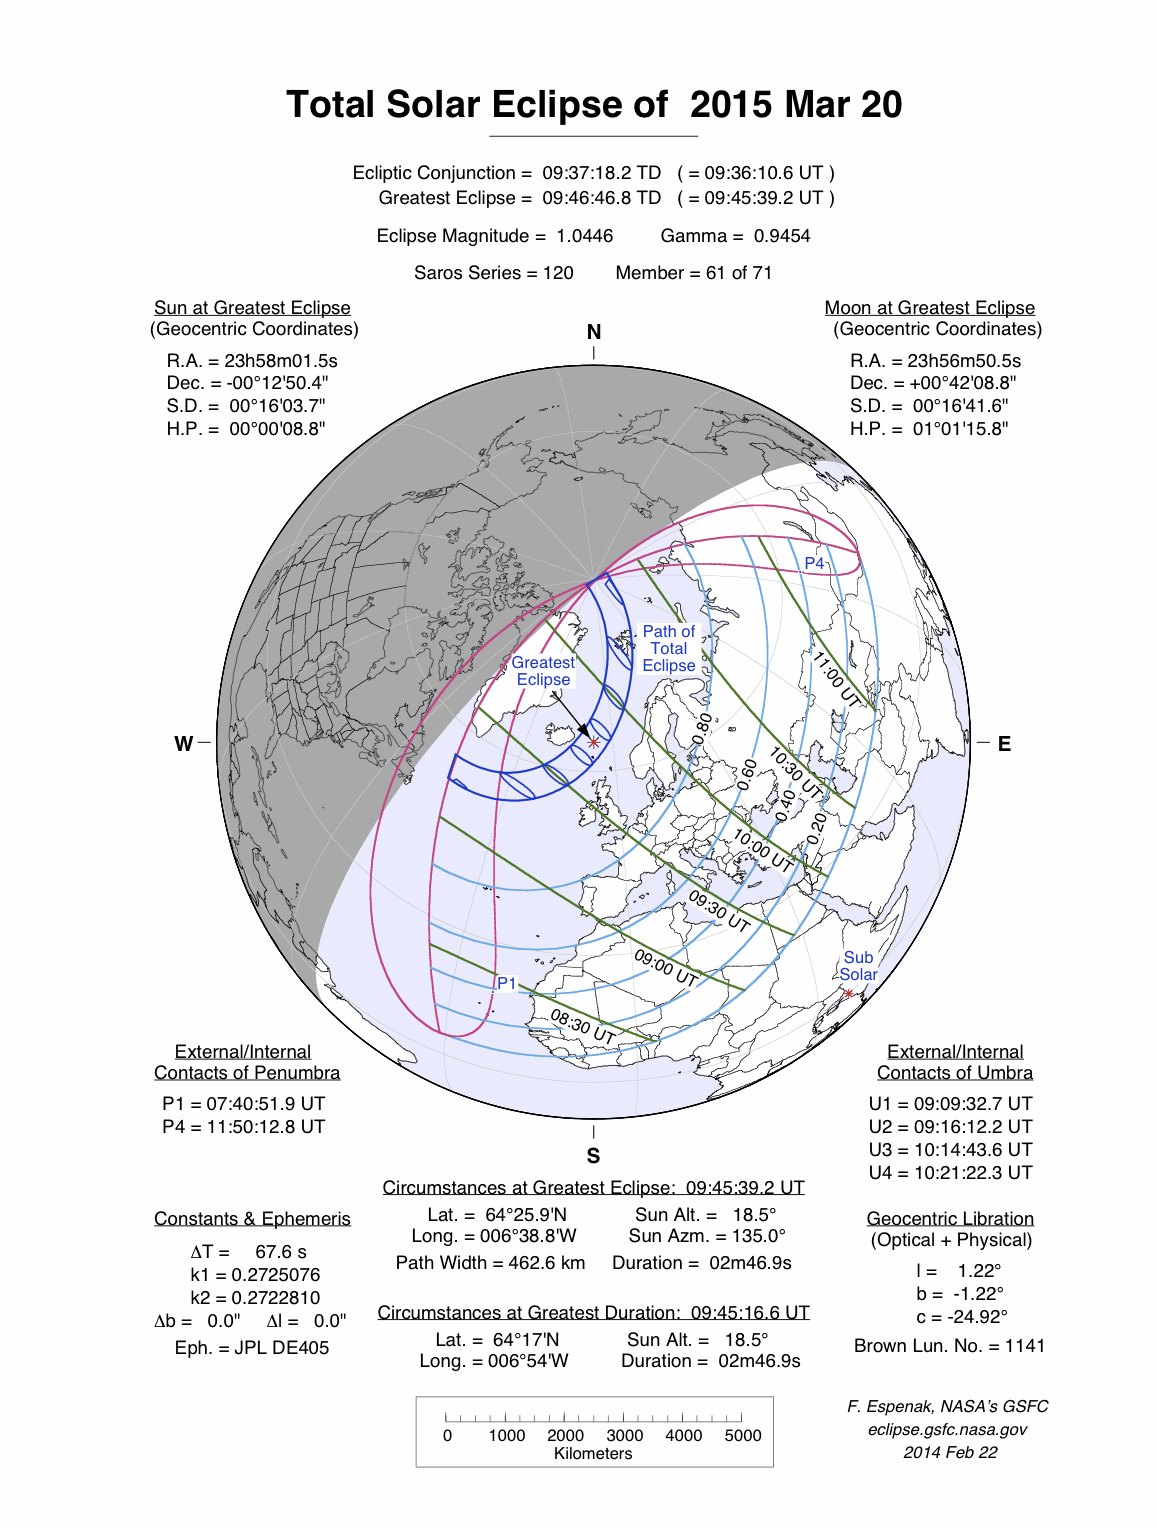 L'area geografica dove sarà possibile osservare l'eclissi totale e quella interessata dall'eclissi parziale (fonte: eclipse.gsfc.nasa.gov)